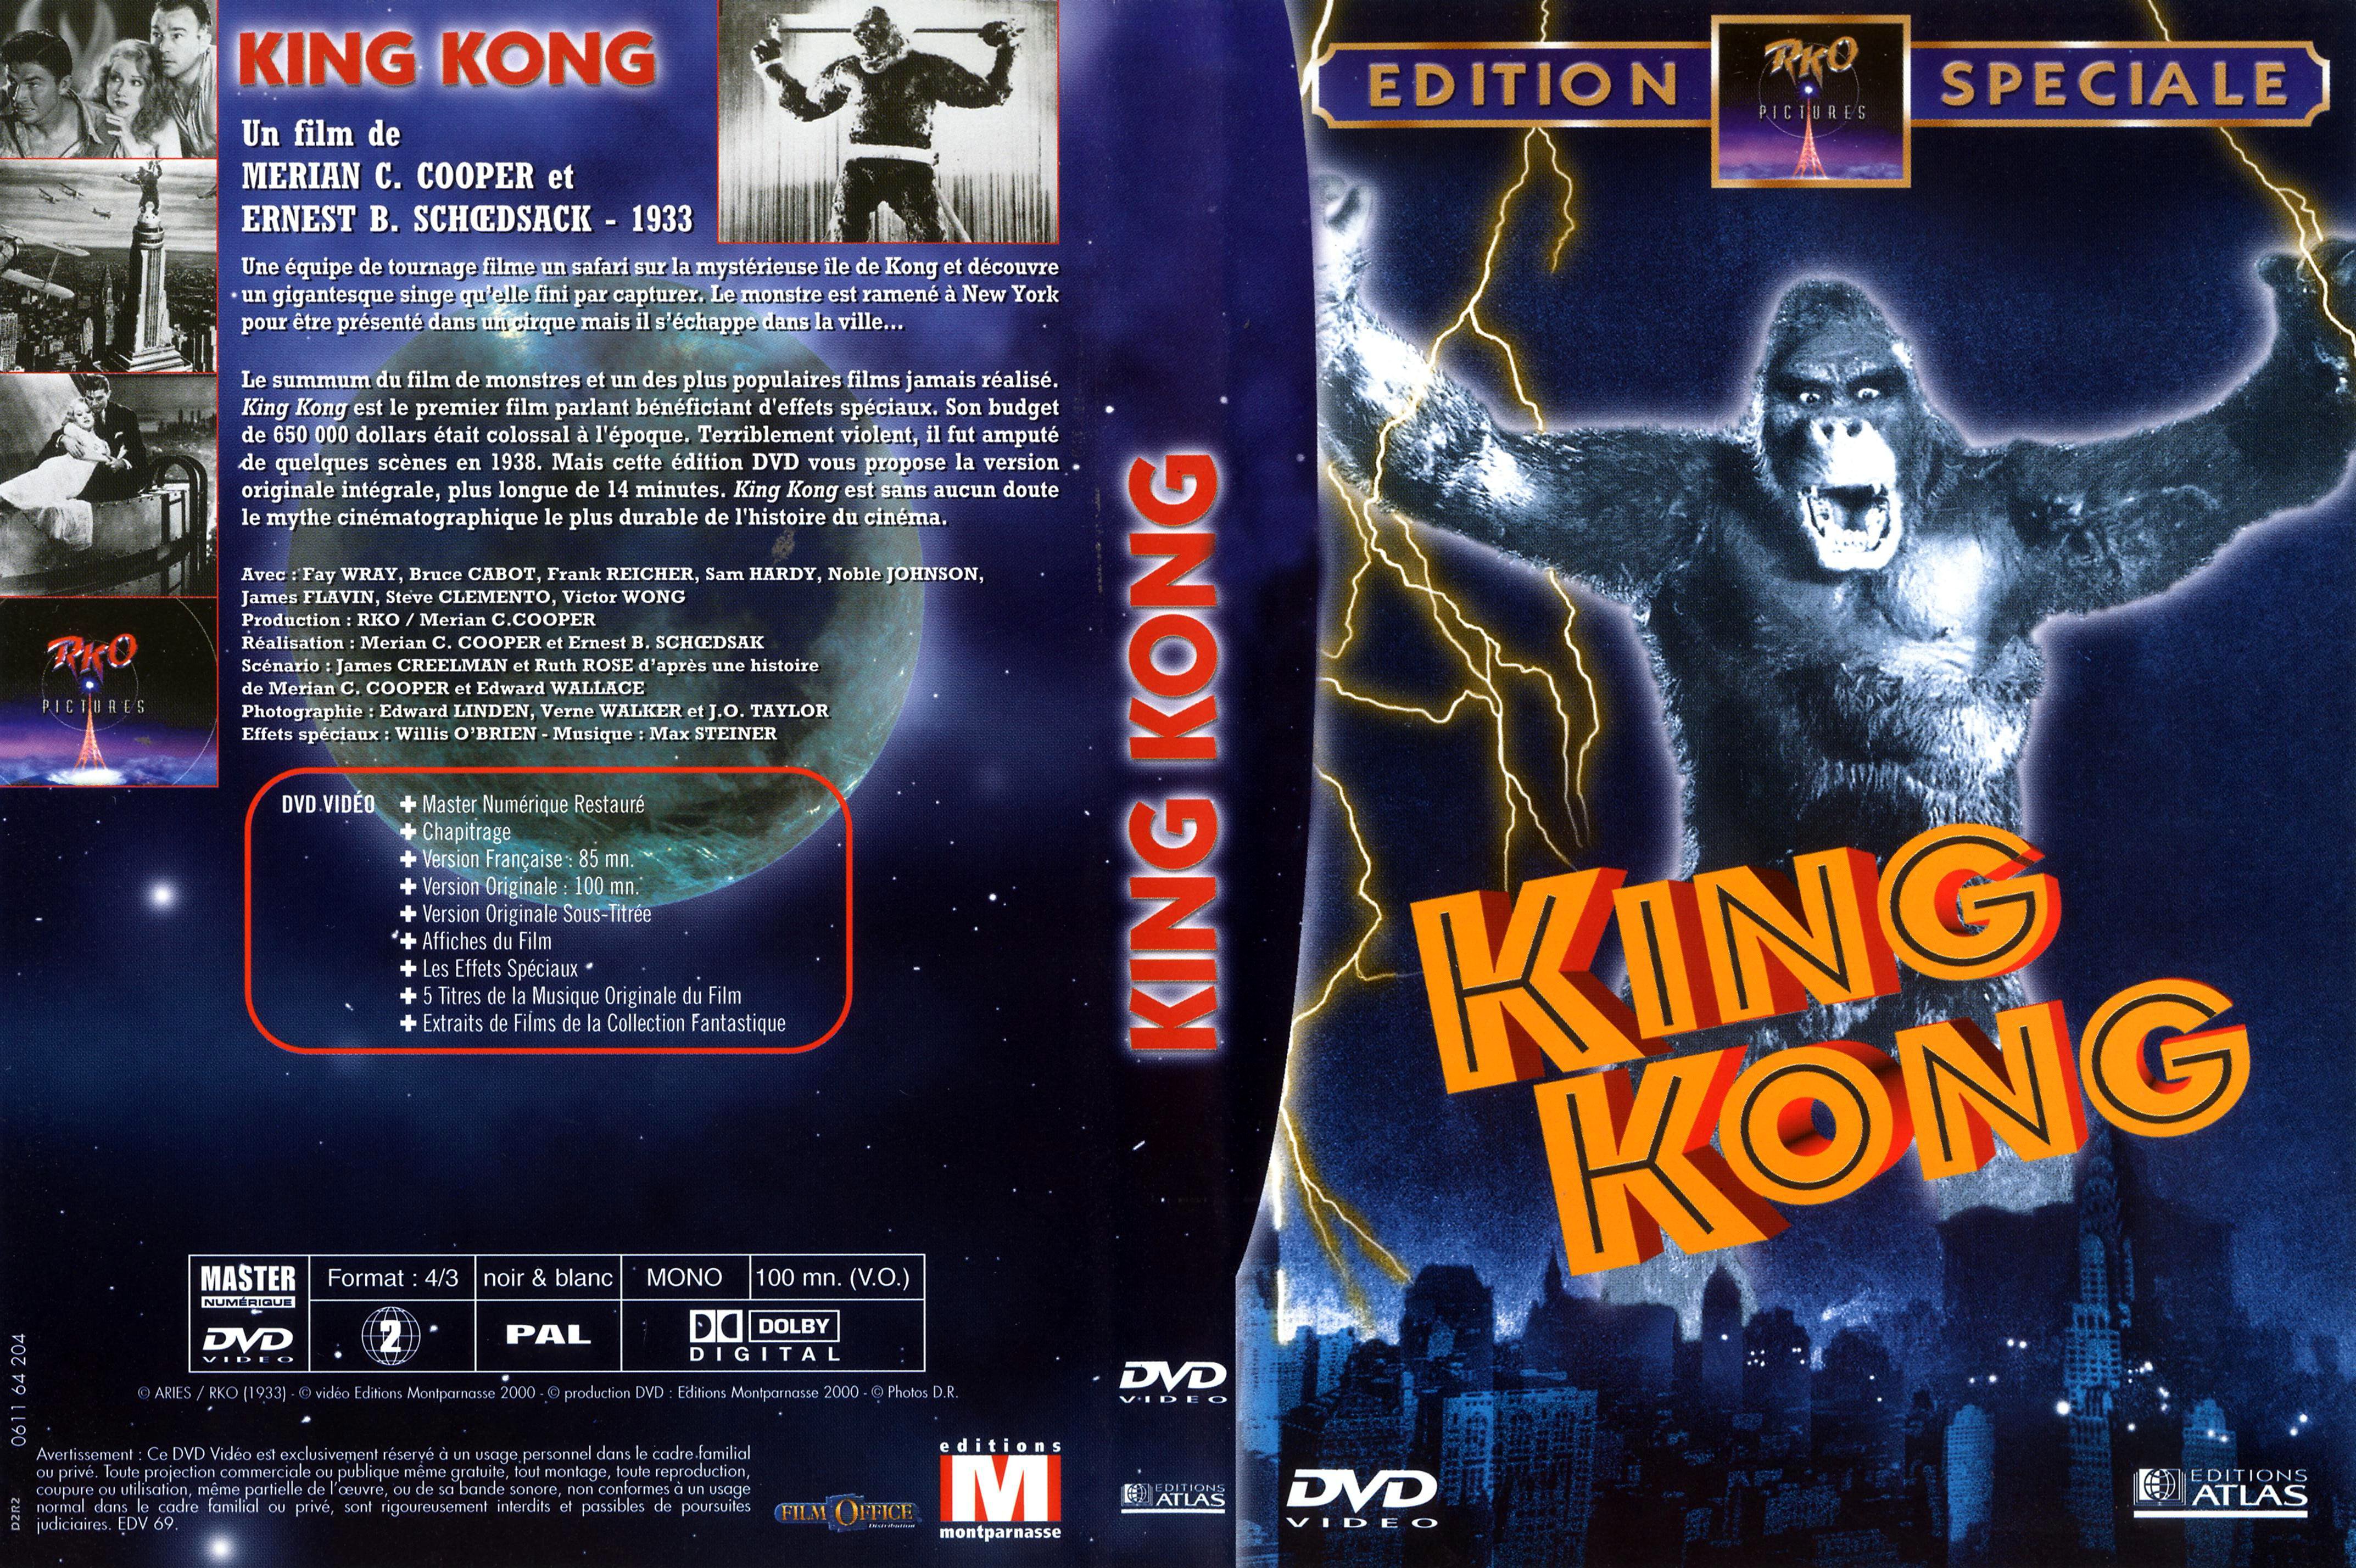 Jaquette DVD King kong (1933) v3